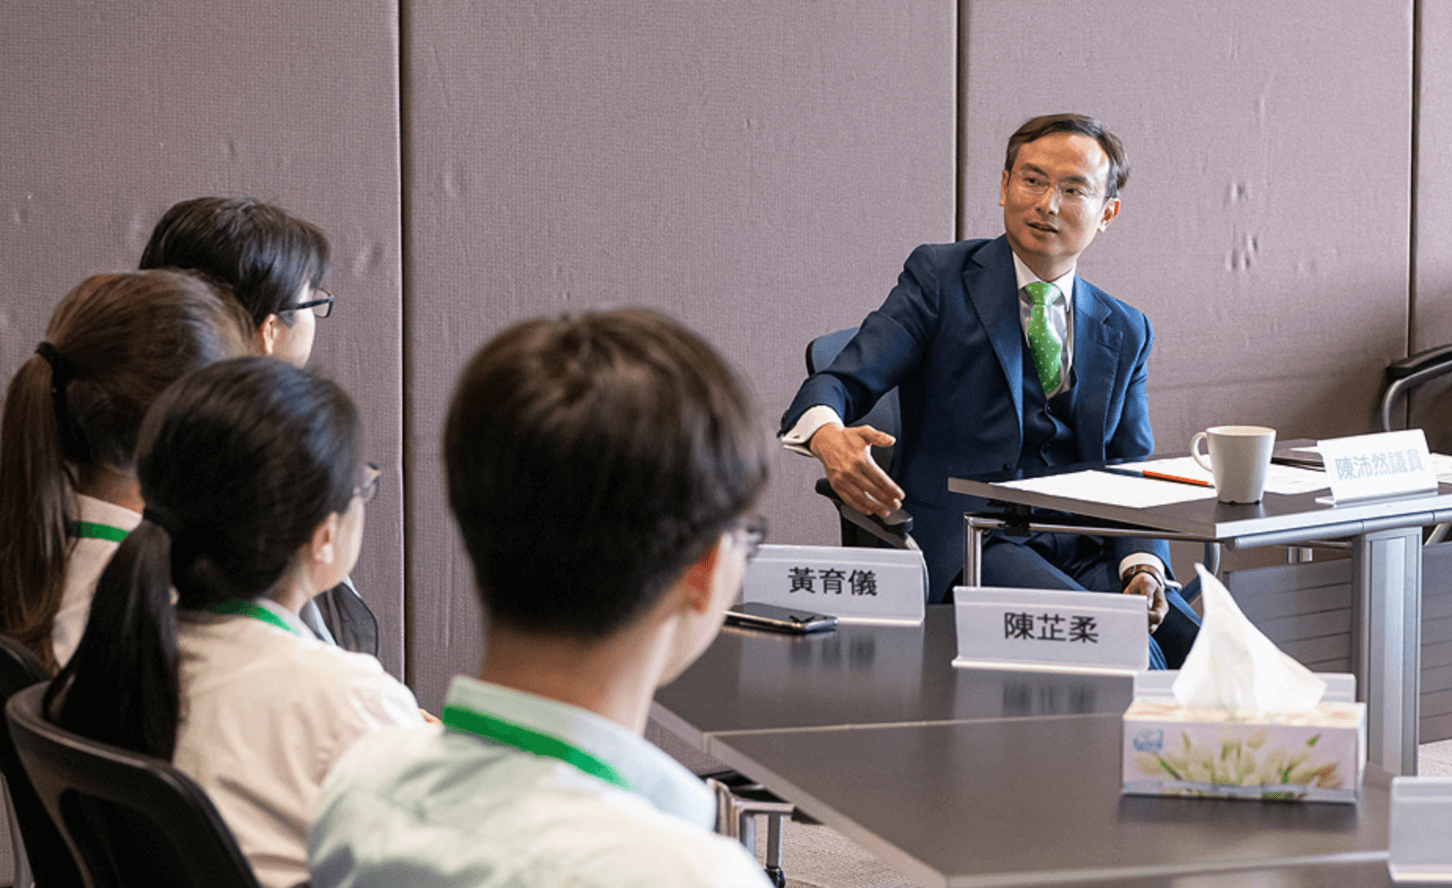 陳沛然議員於2019年6月3日與台山商會中學的同學會面。